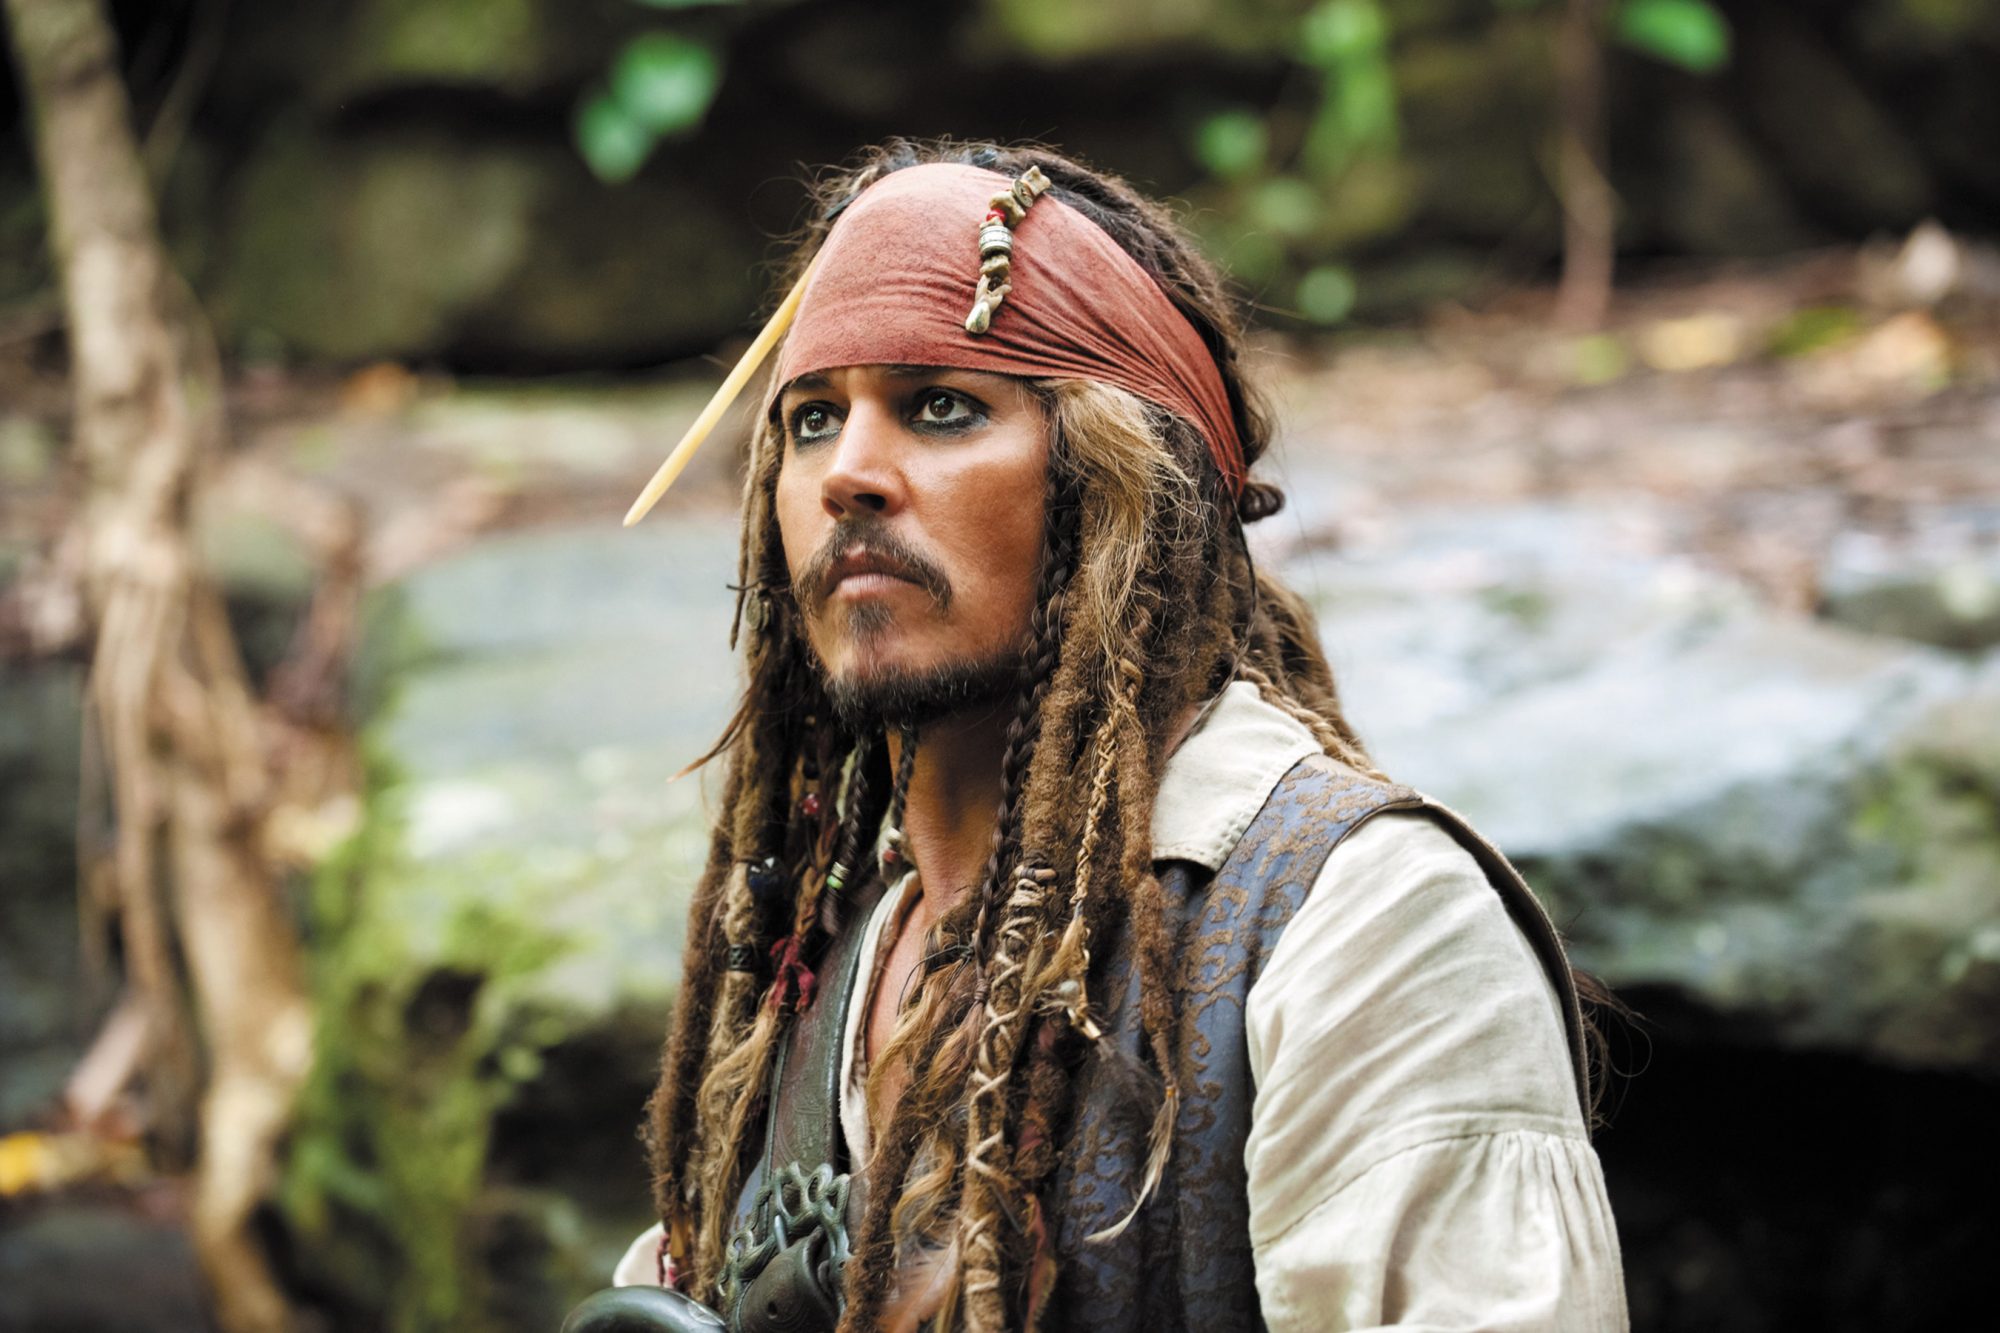 约翰尼·德普原计划主演《加勒比海盗6》 薪酬2250万美元